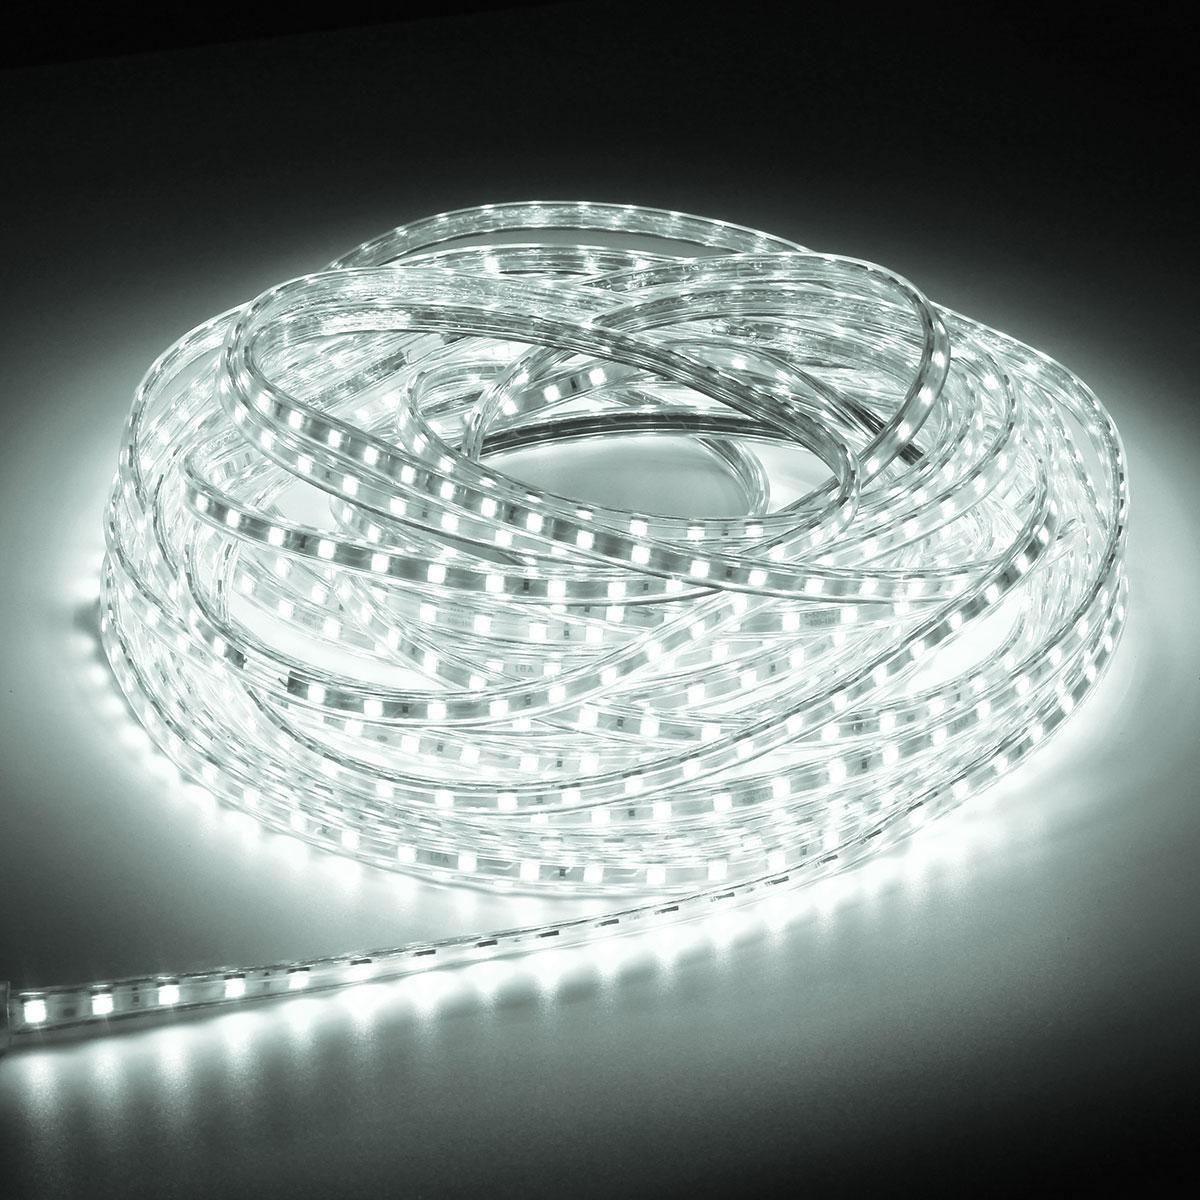 1M 220 V 60 LED Strip Light for Decoration-White: Buy 1M 220 V 60 LED